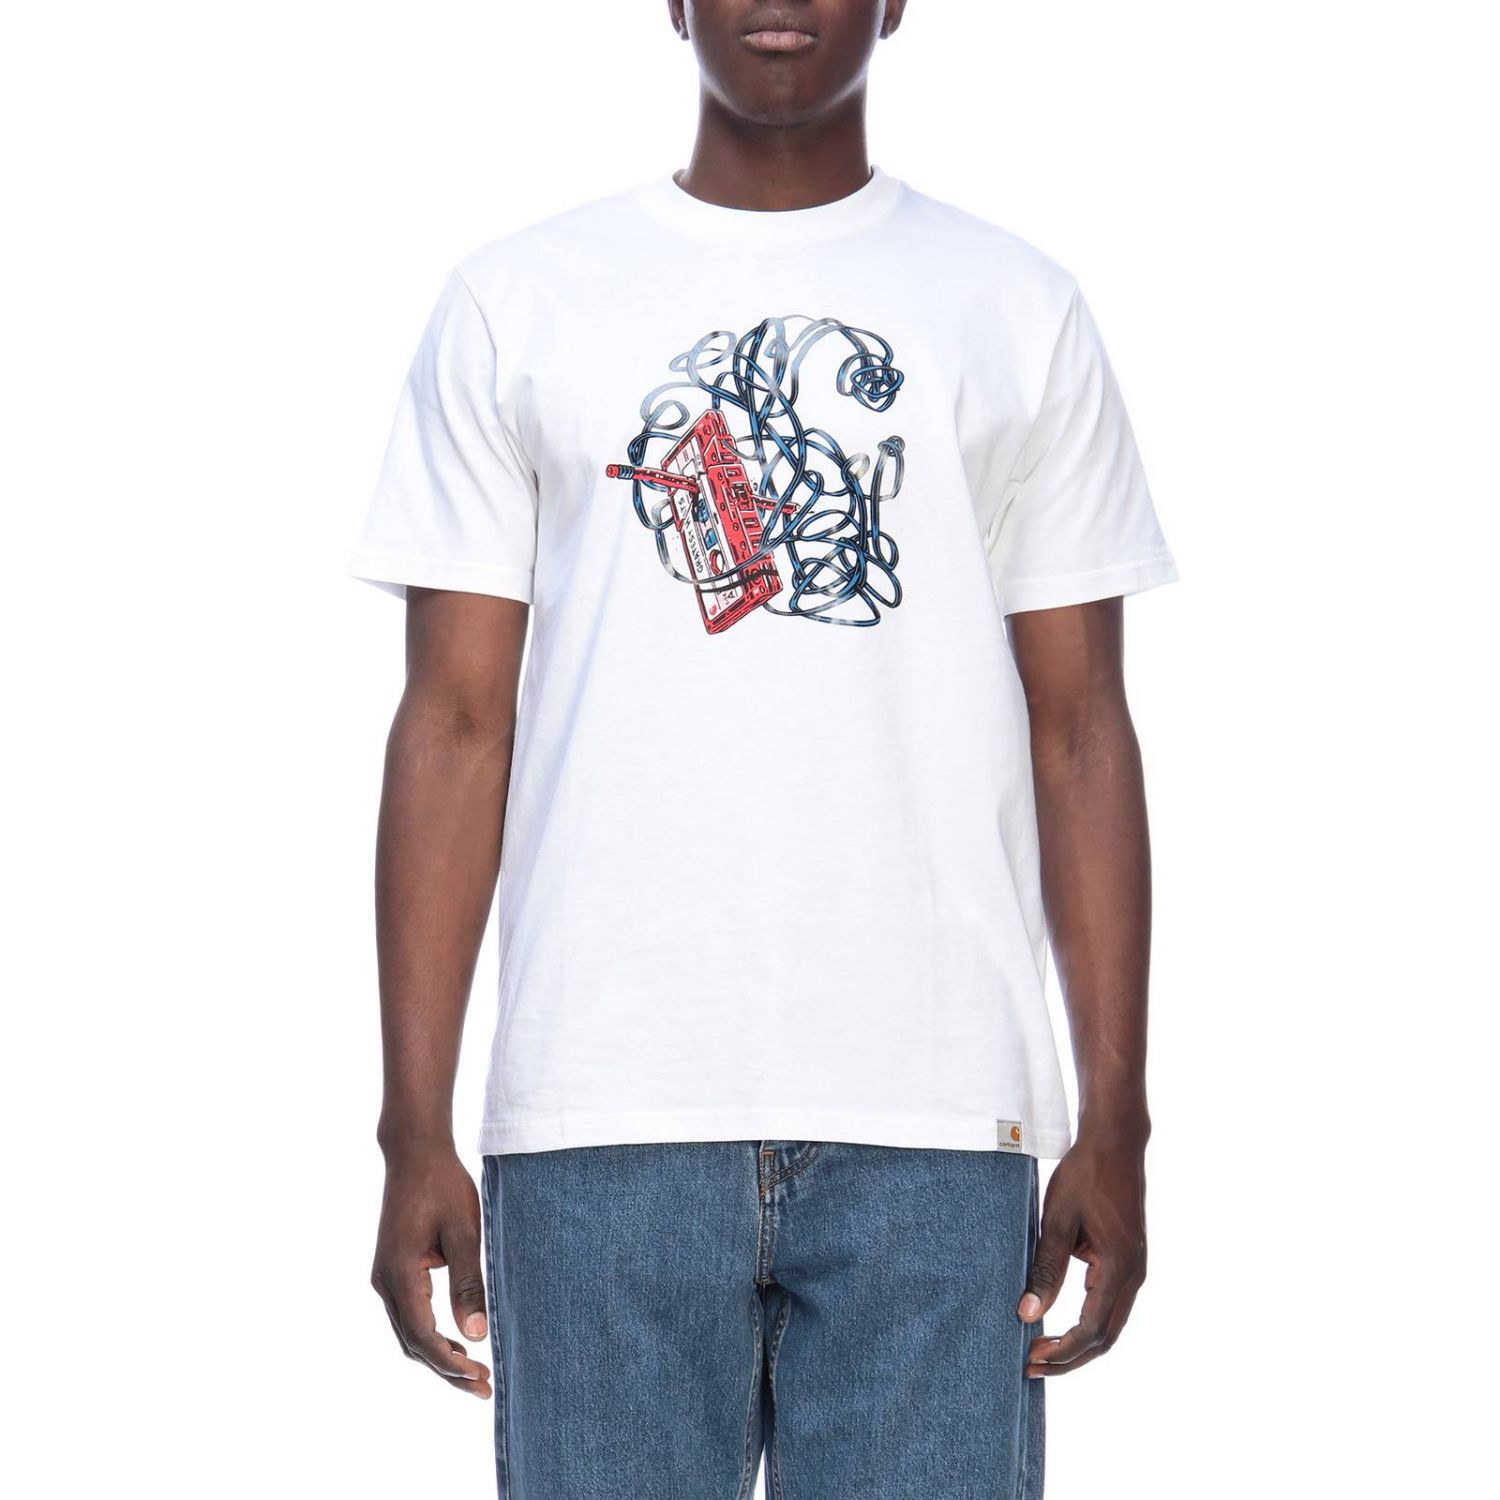 Carhartt Outlet: T-shirt men | T-Shirt Carhartt Men White | T-Shirt ...